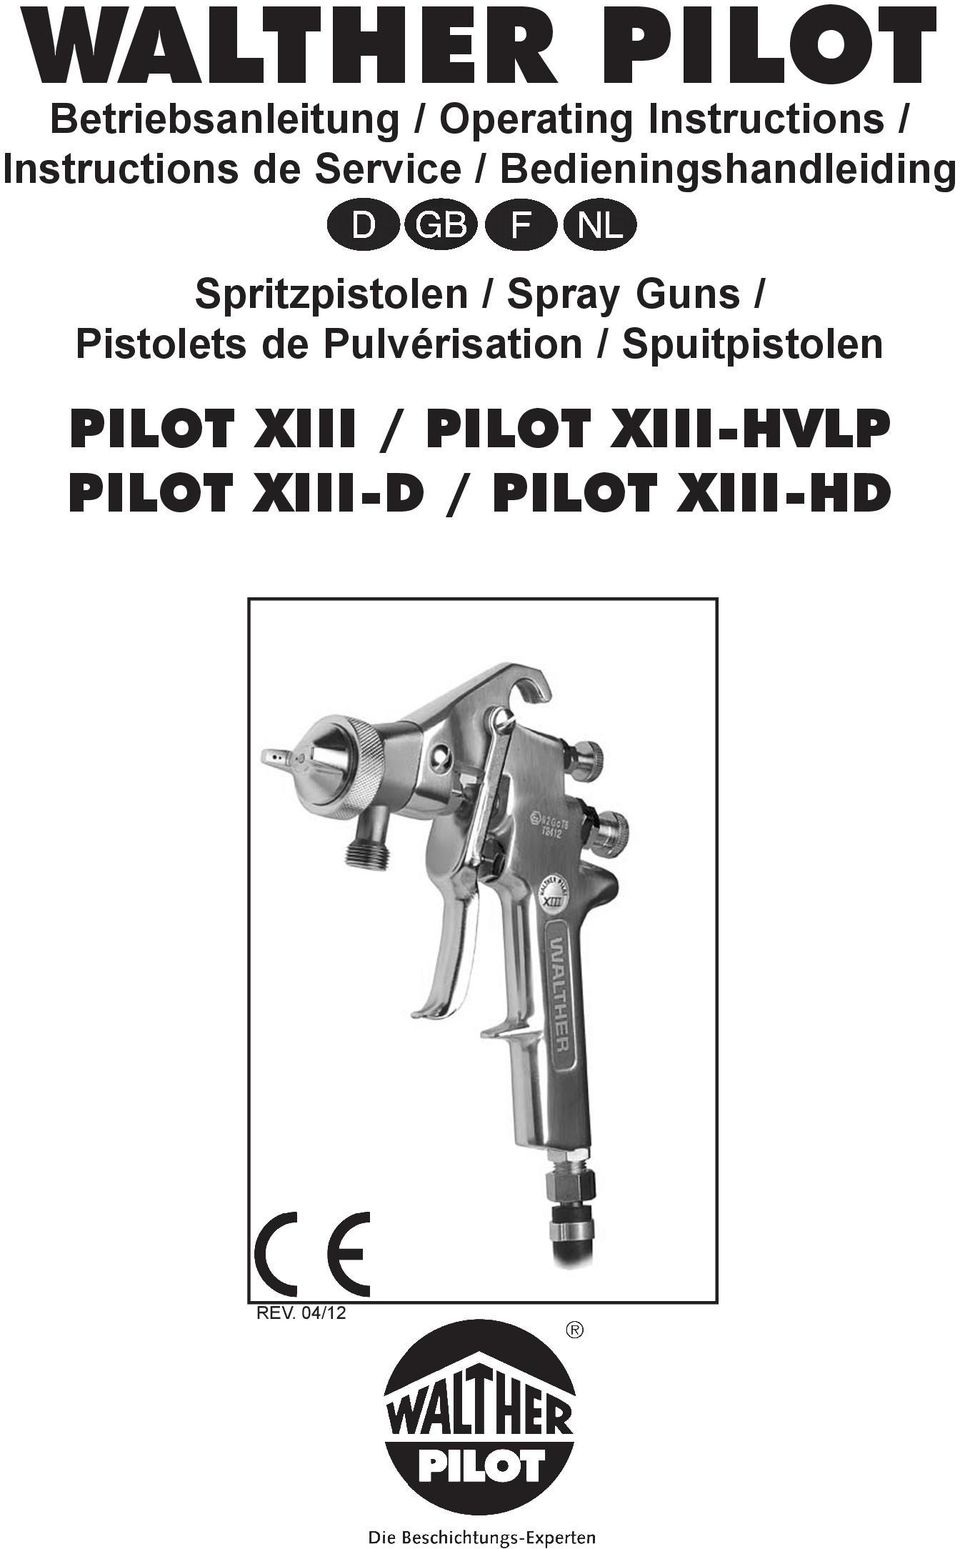 Spritzpistolen / Spray Guns / Pistolets de Pulvérisation /